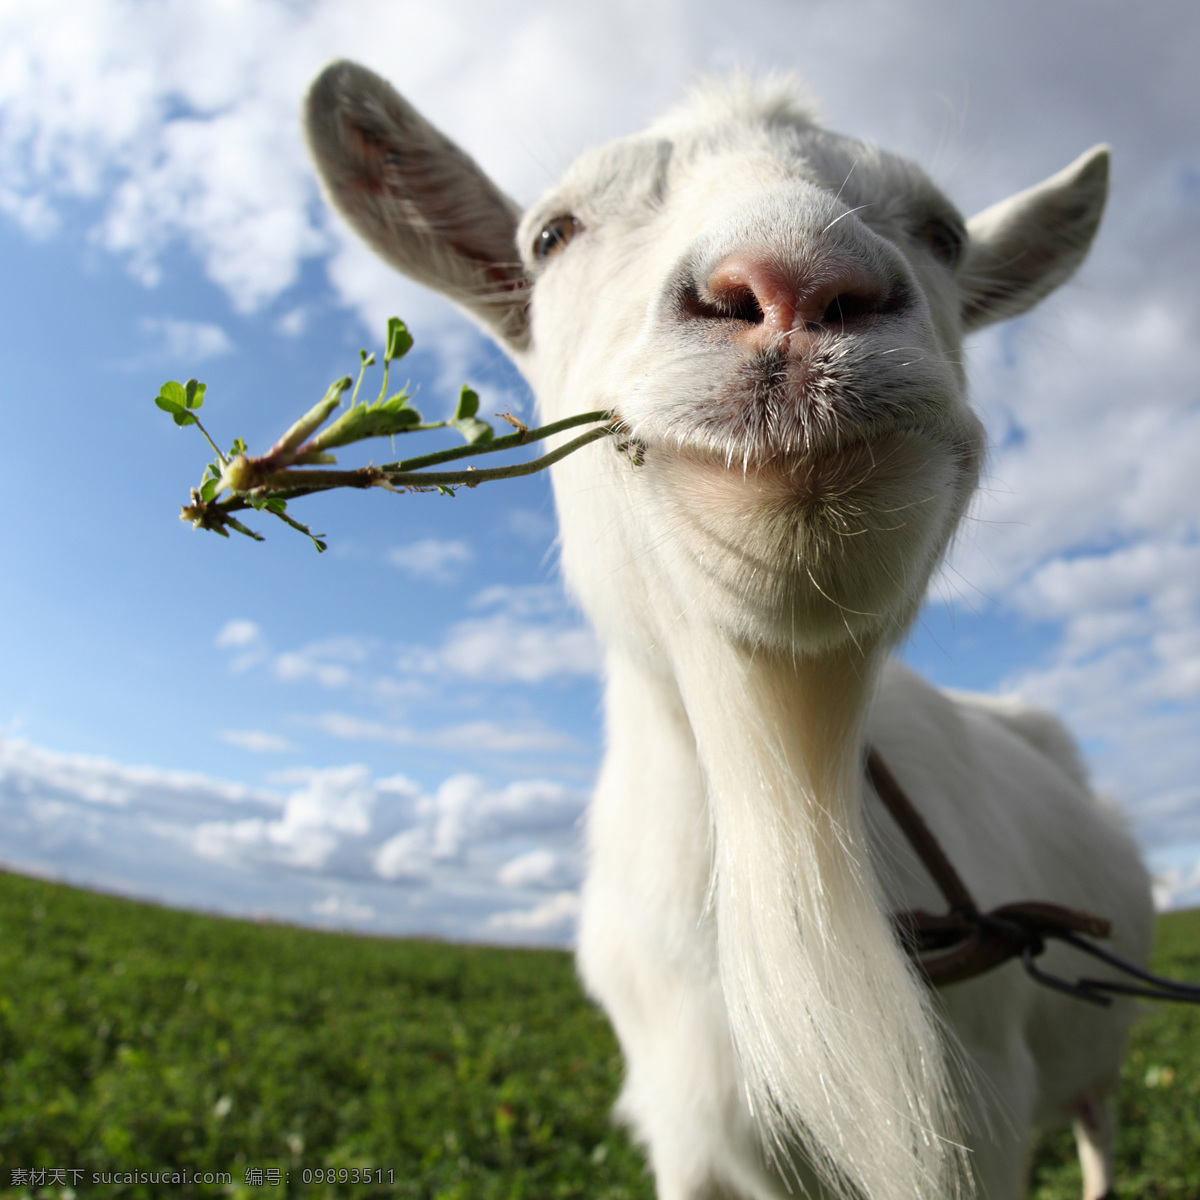 草地 上 吃 草 羊 可爱小羊羔 小羊羔 动物世界 动物摄影 陆地动物 生物世界